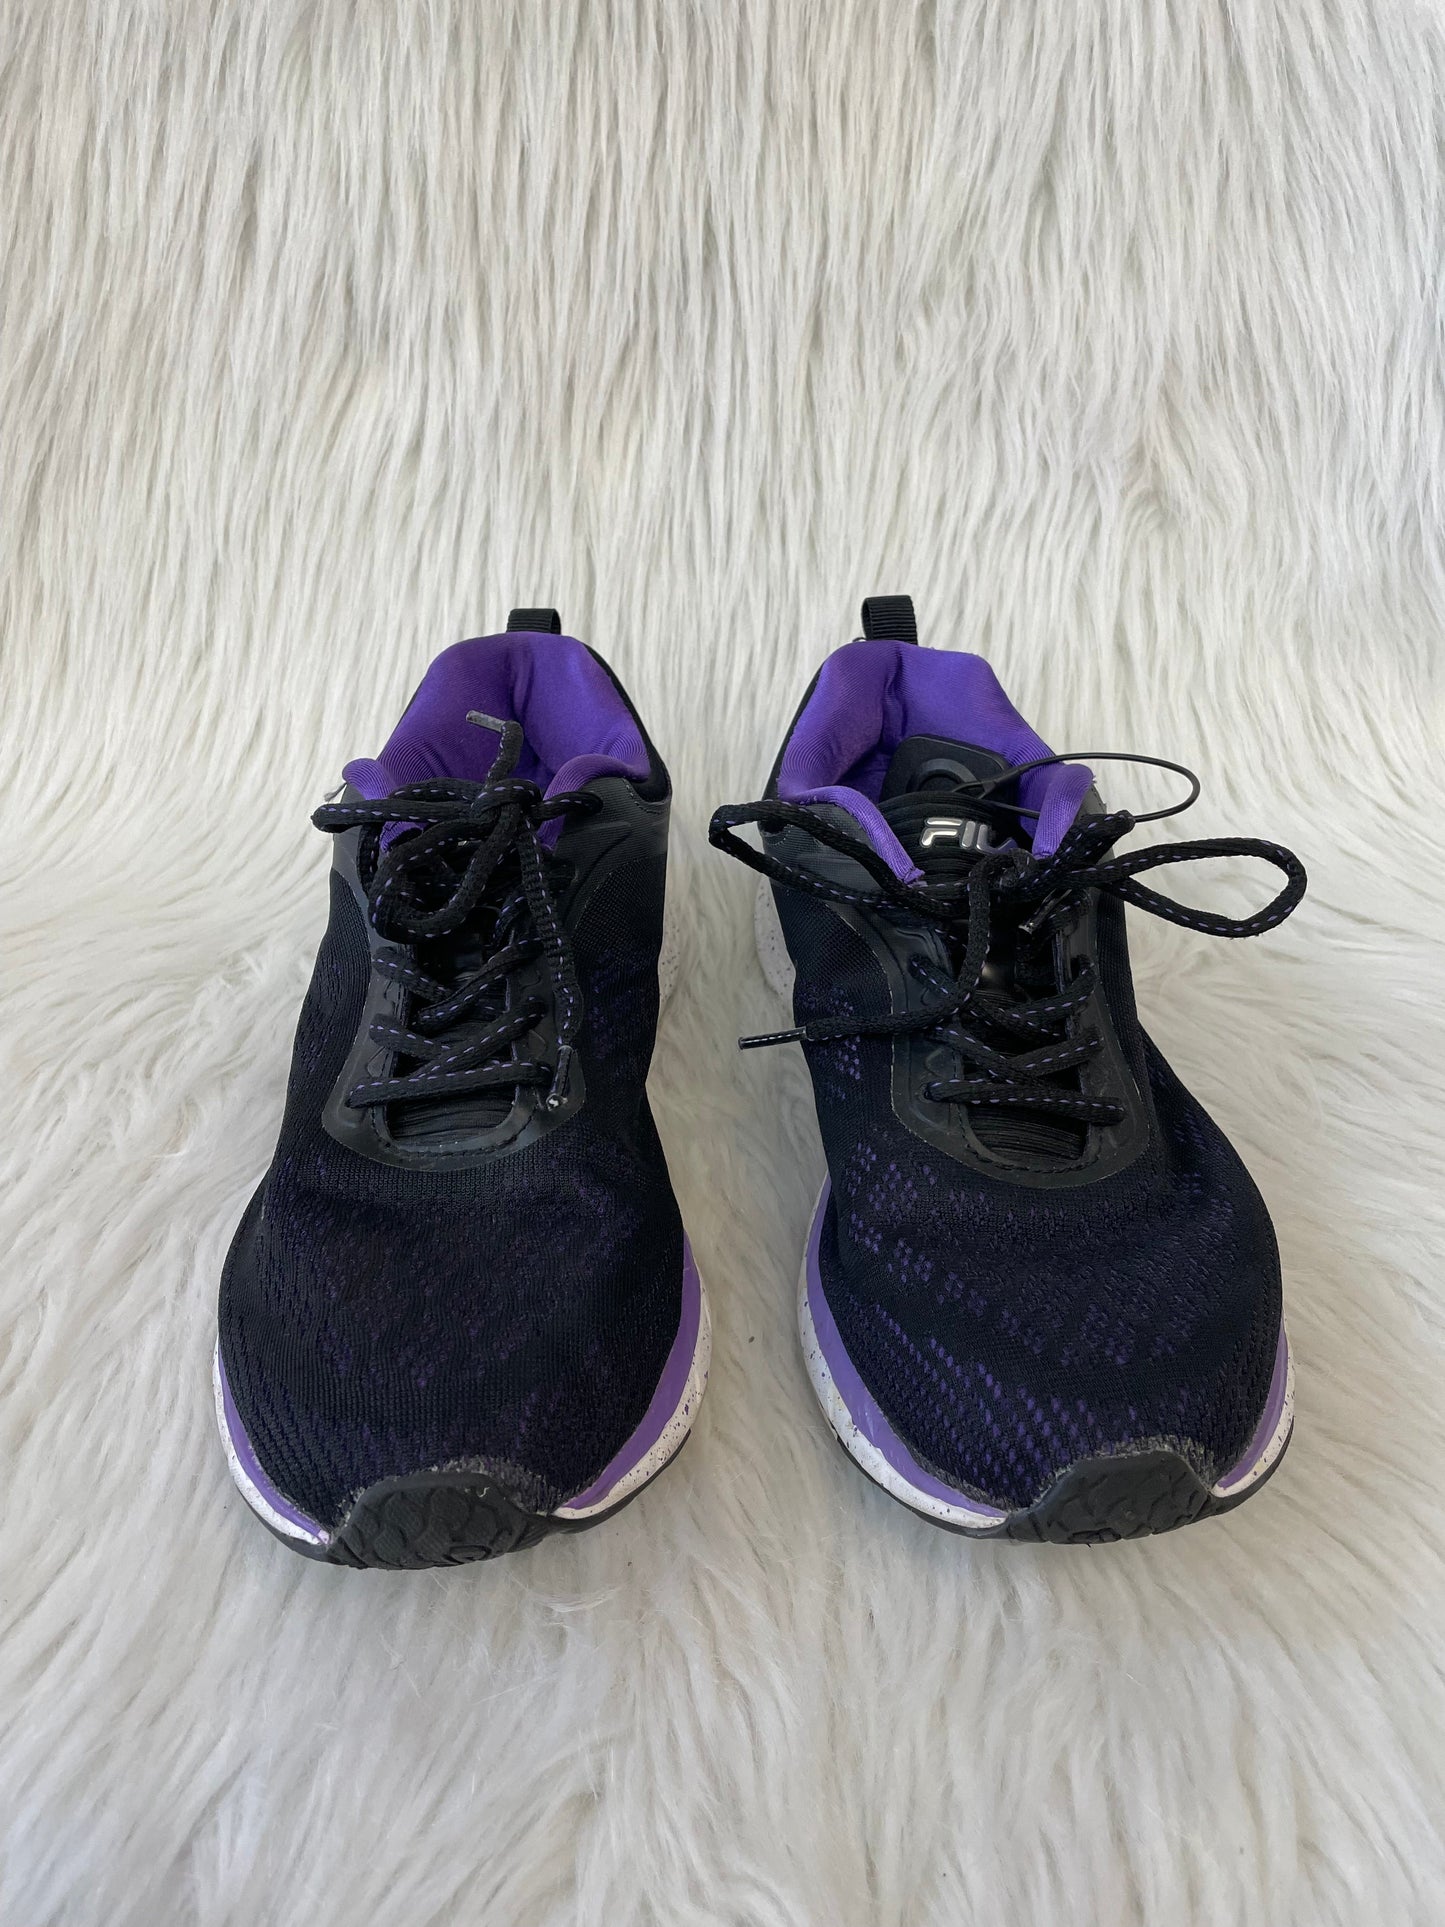 Purple Shoes Athletic Fila, Size 9